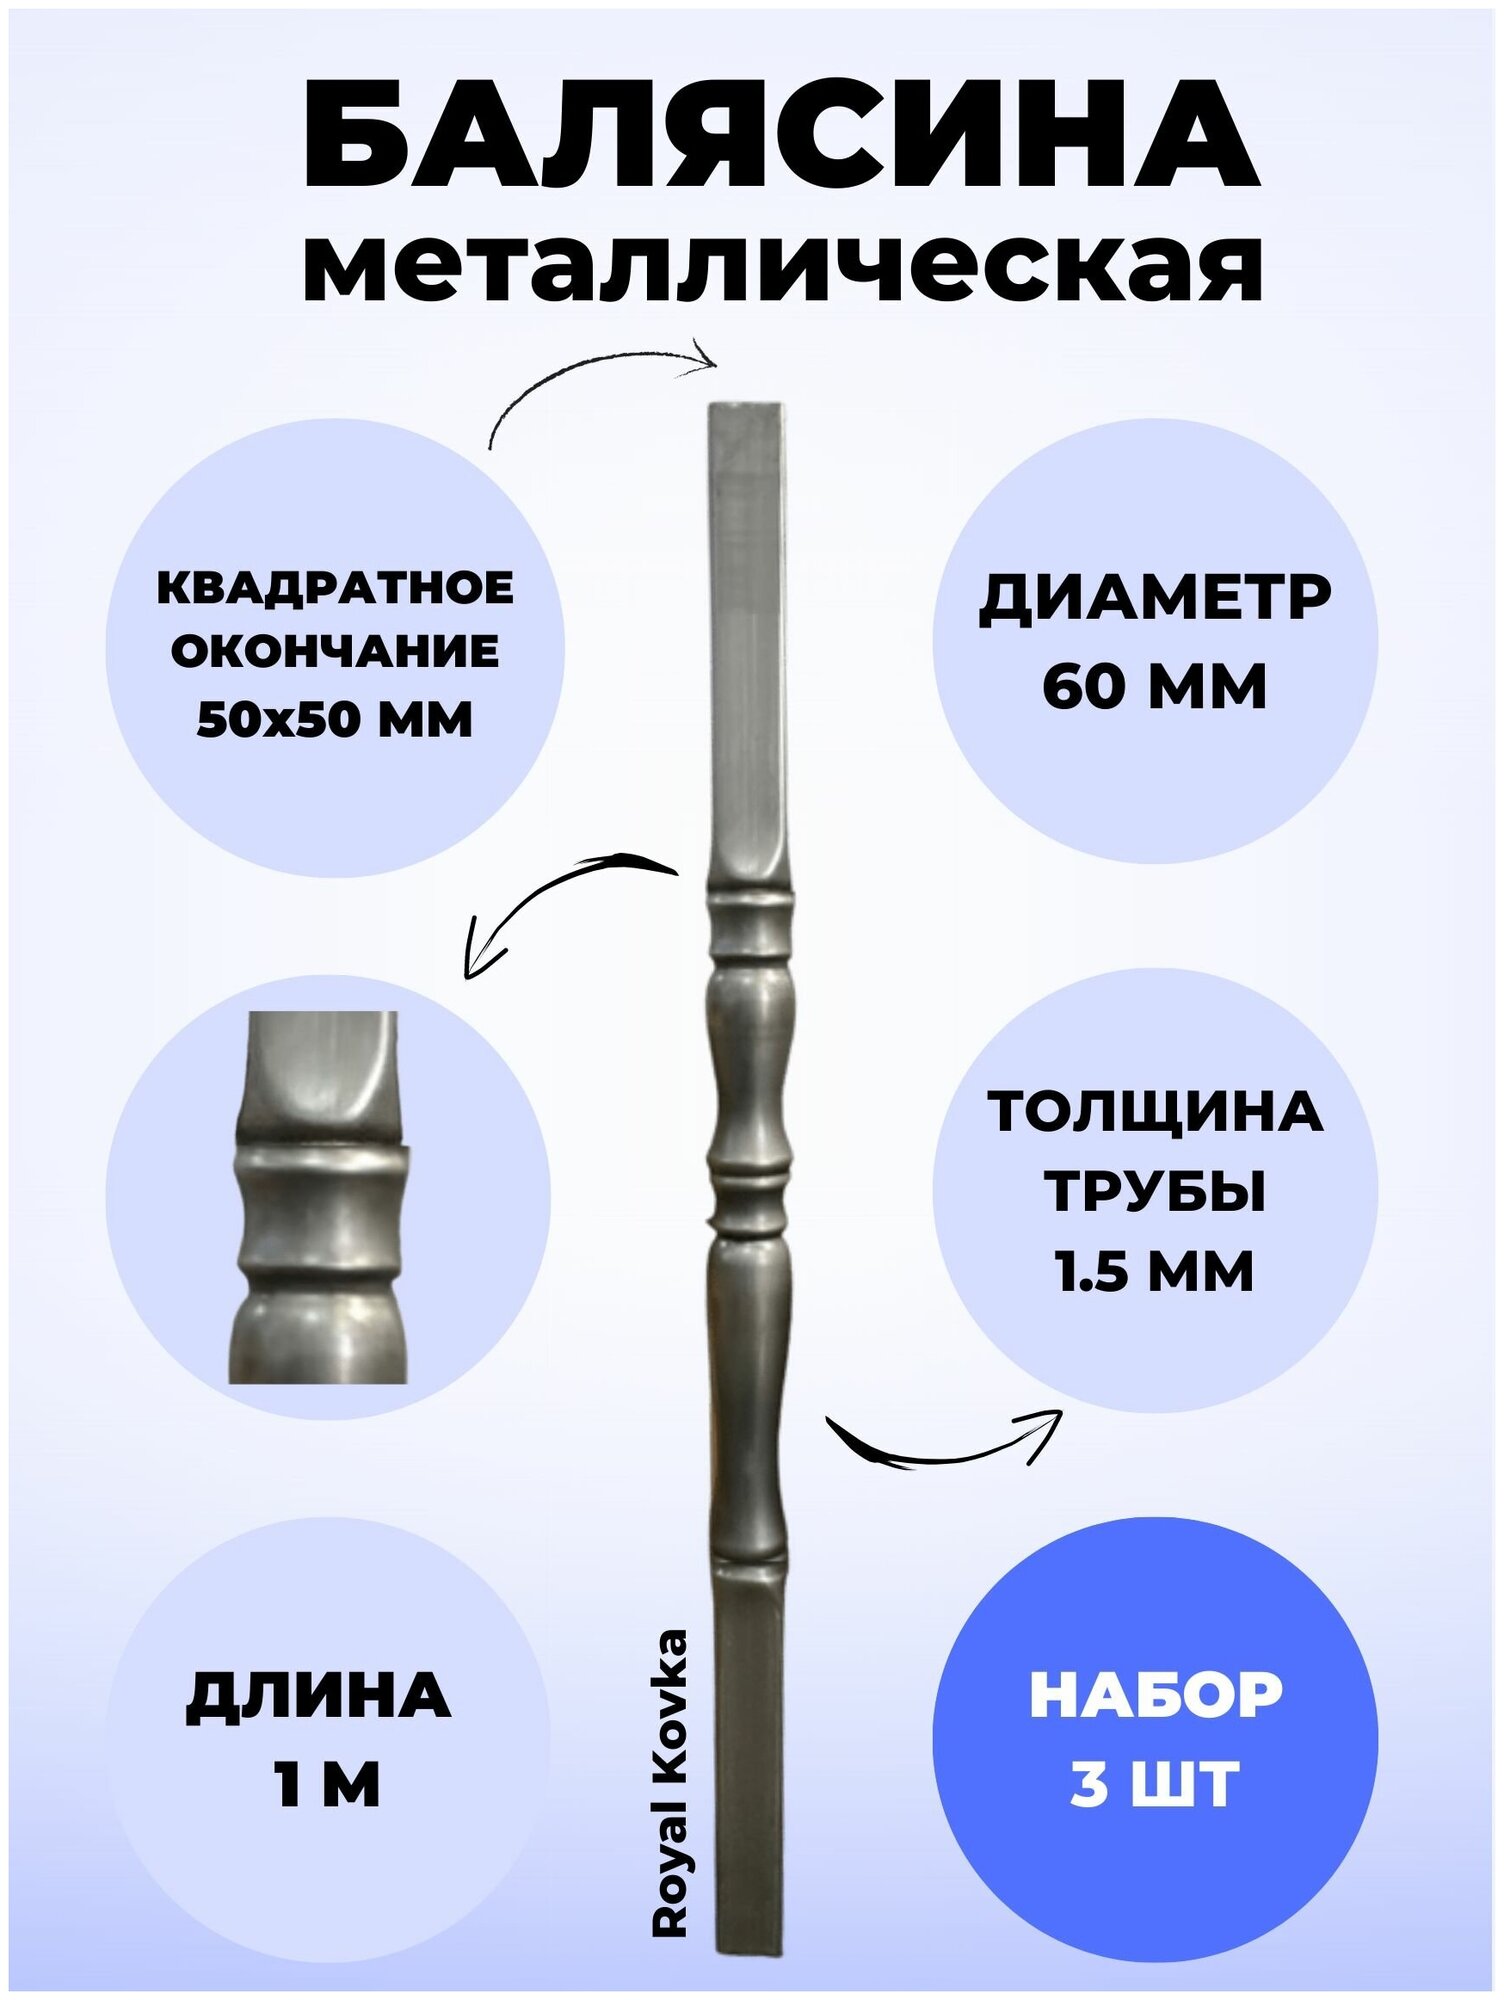 Набор балясин кованых металлических Royal Kovka 3 шт диаметр 60 мм квадратные окончания 50х50 мм арт. 50*50.3 КВ 3